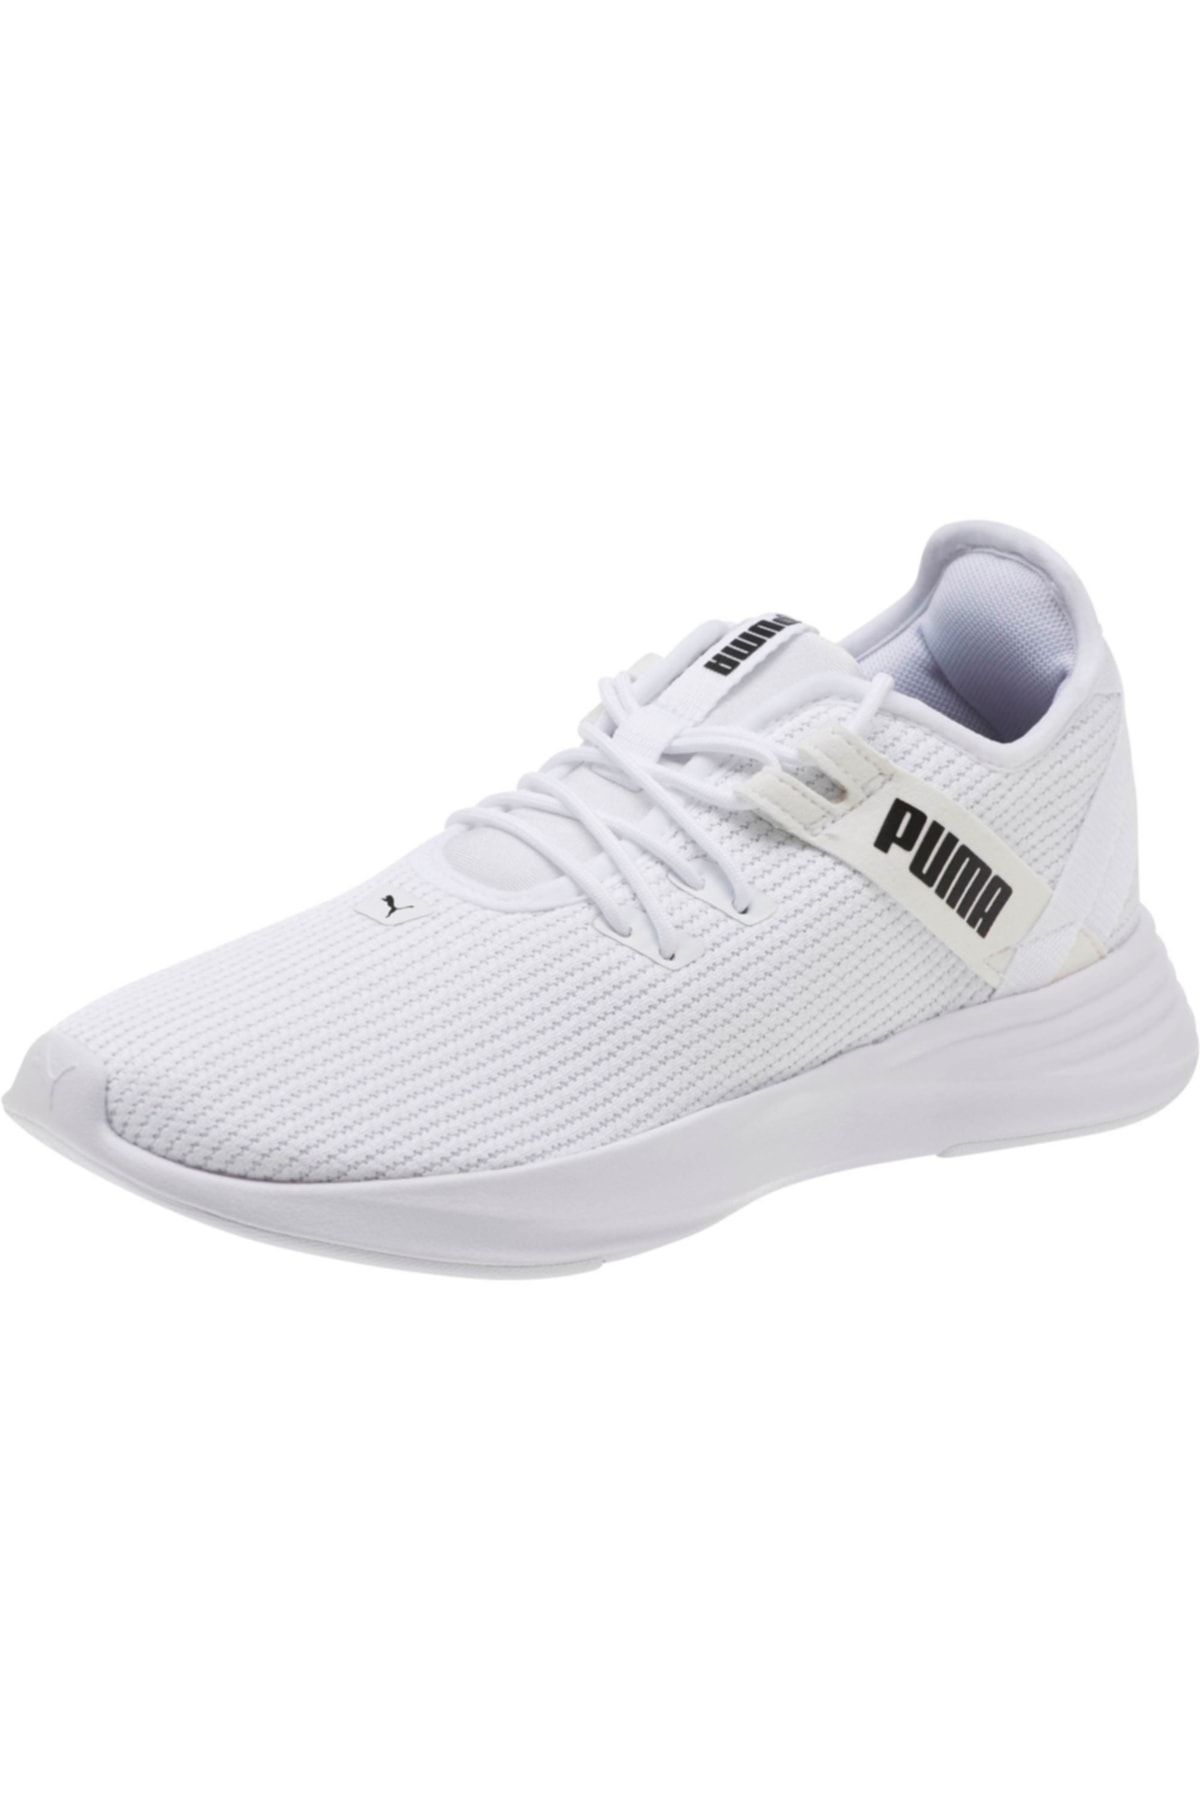 Puma RADIATE XT WN S Beyaz Kadın Sneaker Ayakkabı 101119110